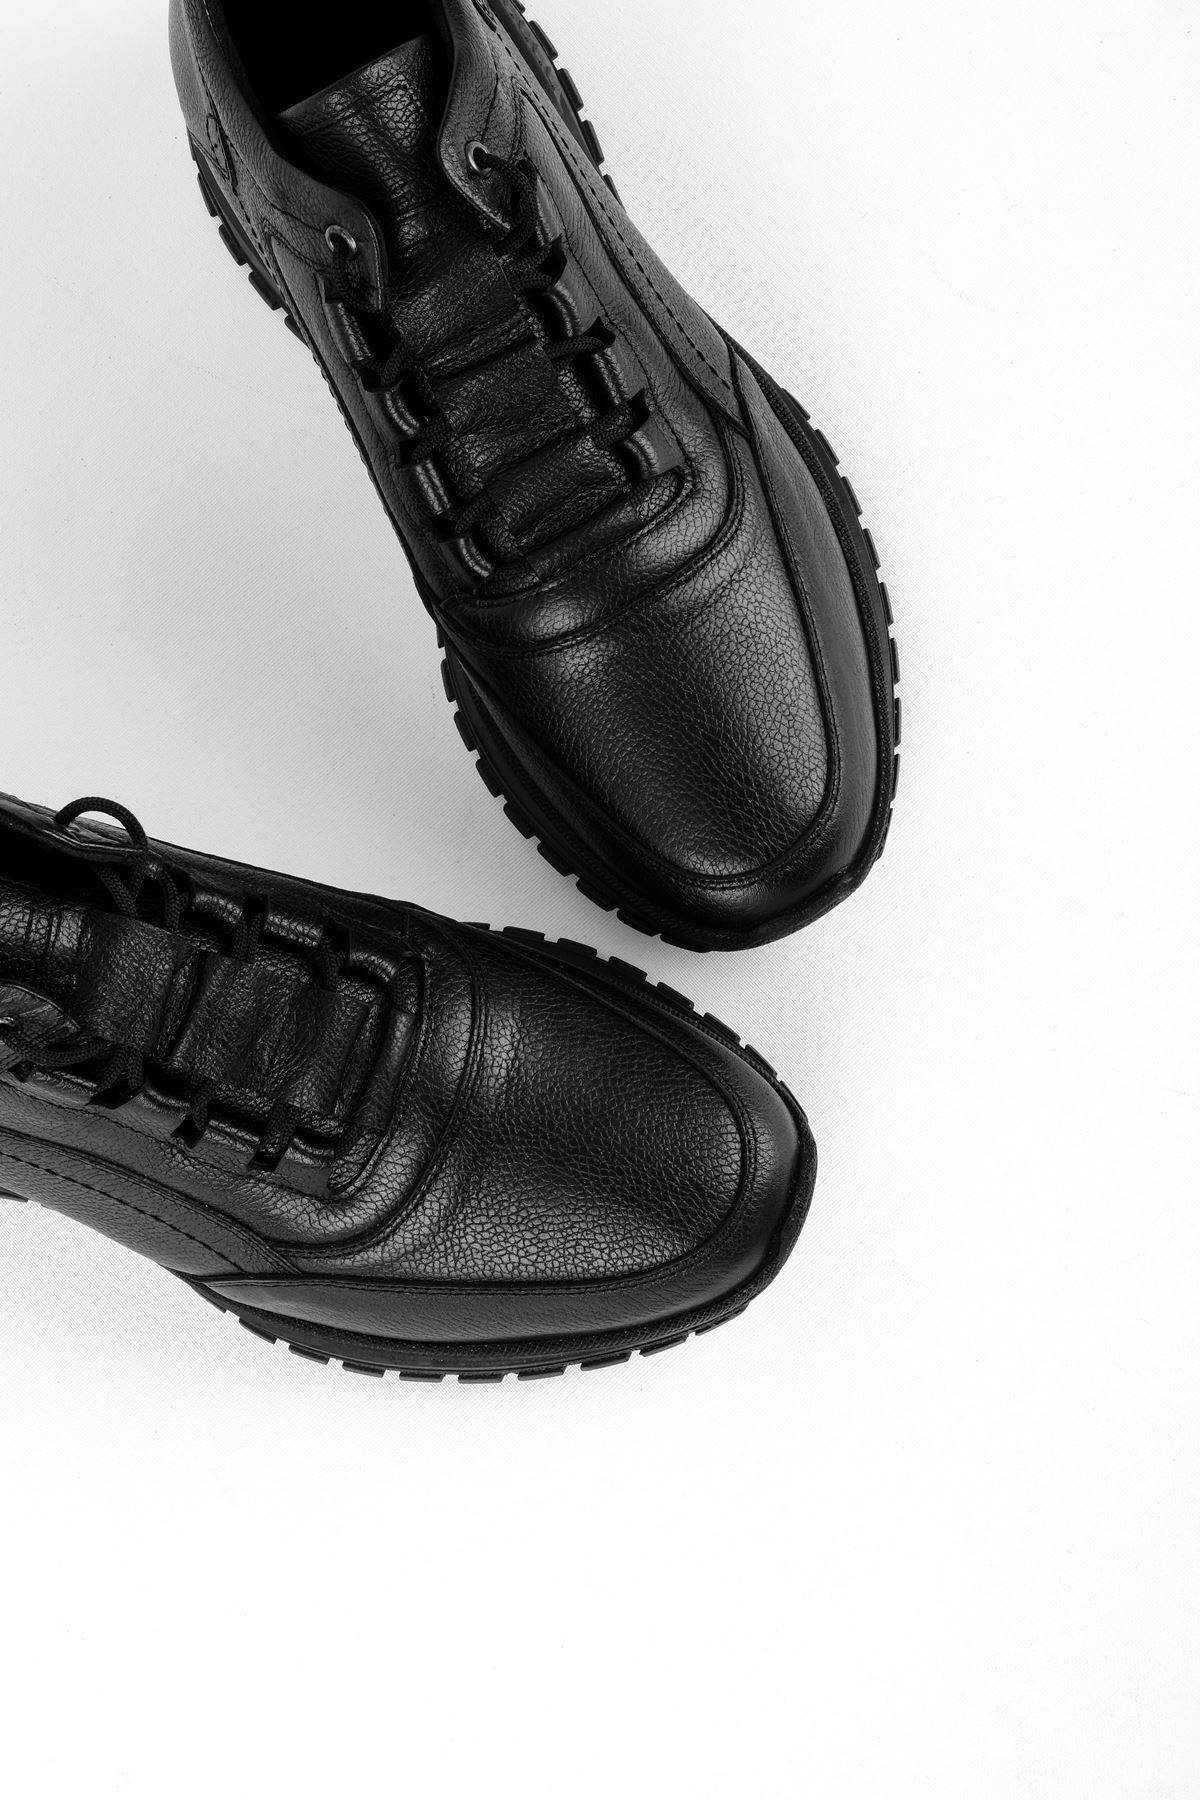 Raxel Hakiki Deri Erkek Ayakkabı Yarım Kısa Bot - Siyah